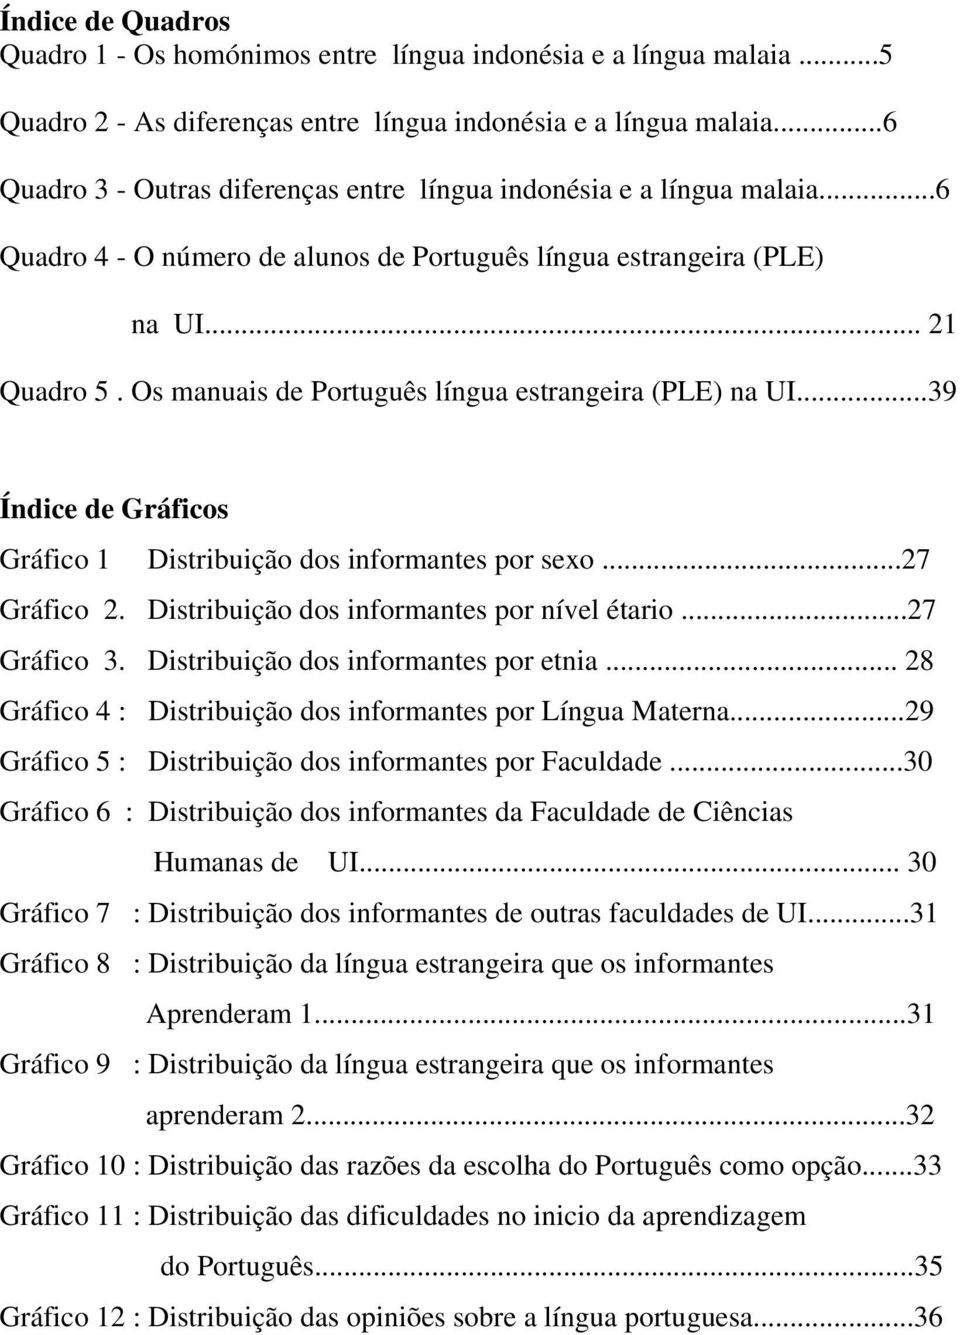 Os manuais de Português língua estrangeira (PLE) na UI...39 Índice de Gráficos Gráfico 1 Distribuição dos informantes por sexo...27 Gráfico 2. Distribuição dos informantes por nível étario.